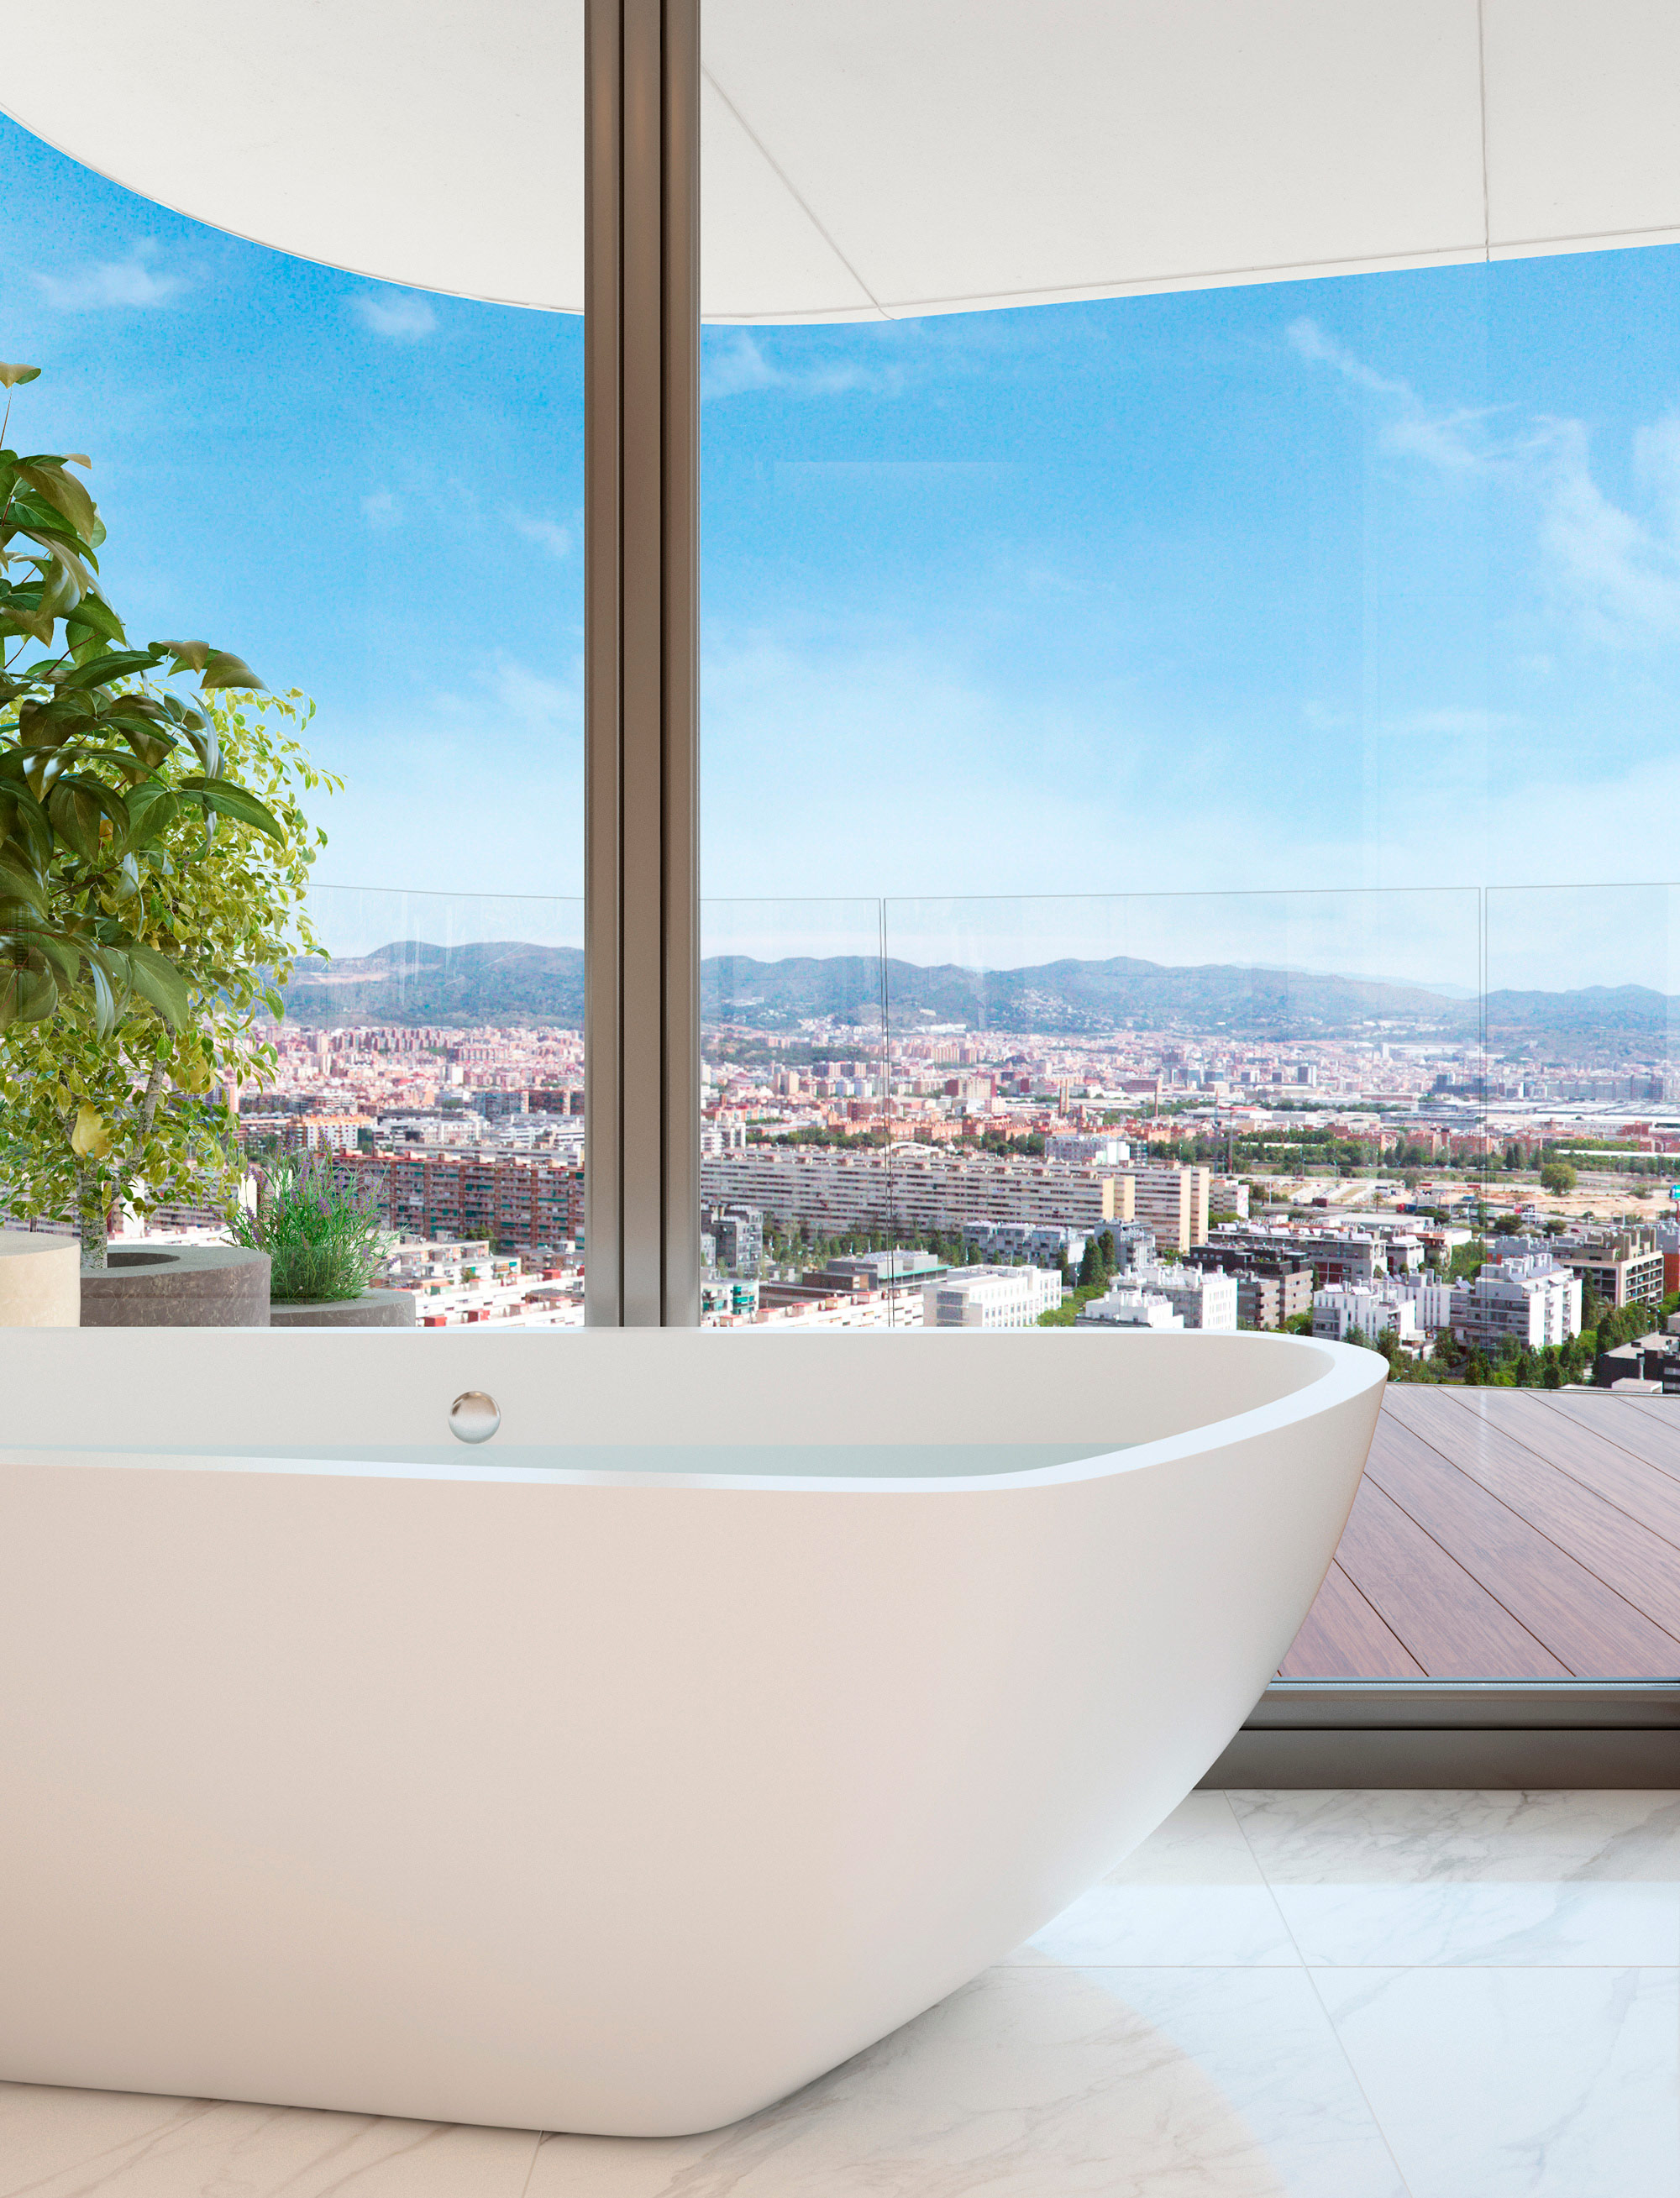 antares barcelona website design lavish amenities kommigraphics